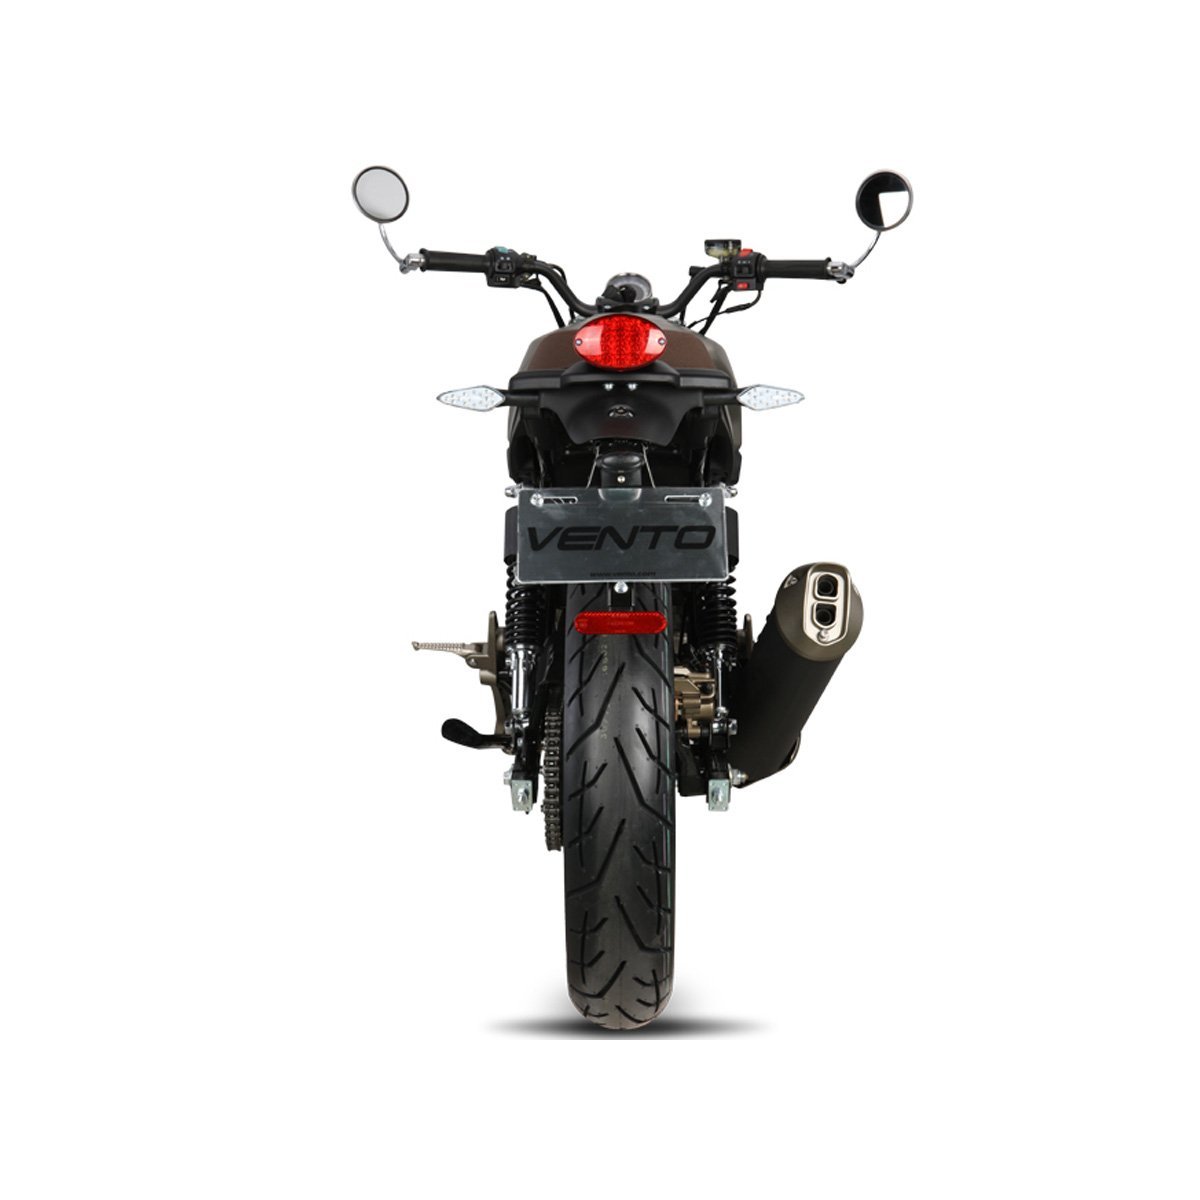 Motocicleta Rocketman 250 Cc Vento